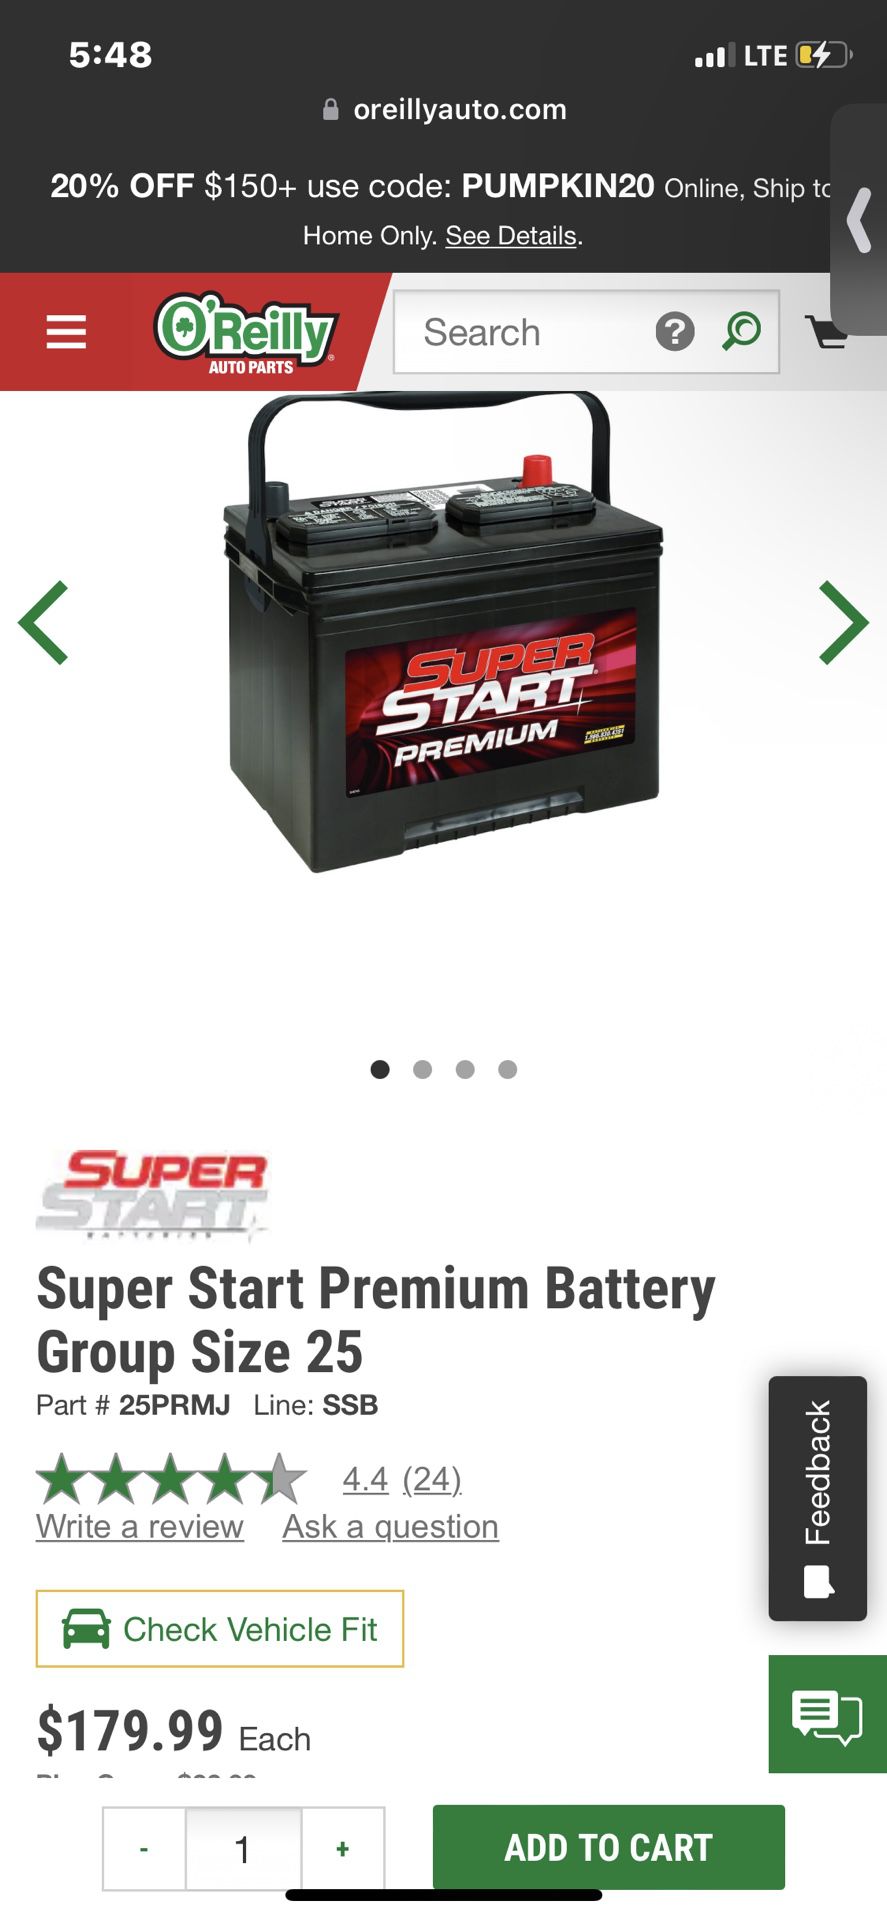 Super Start Premium 12v Group Size 25